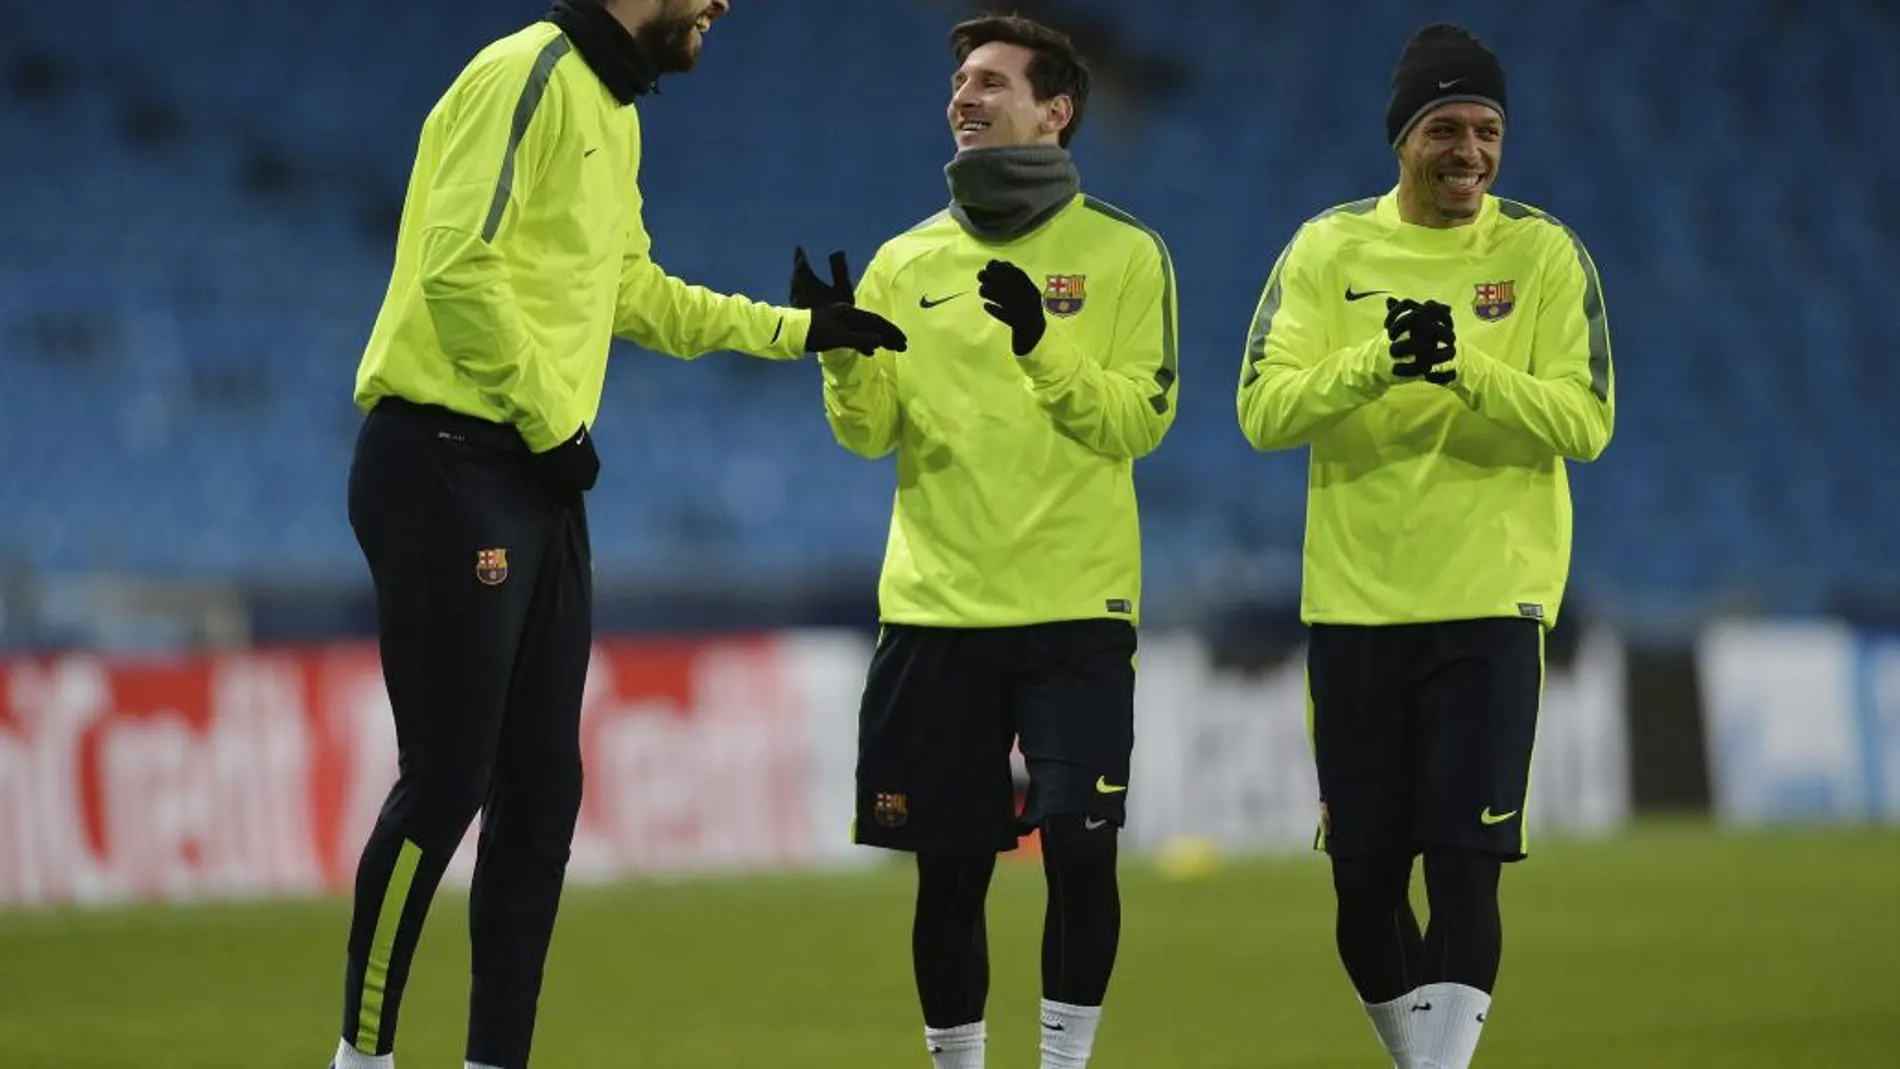 Piqué (i), bromea con sus compañeros, Lionel Messi (c) y Adriano Correia (d) durante el entrenamiento del equipo celebrado en el estadio Etihad de Manchester